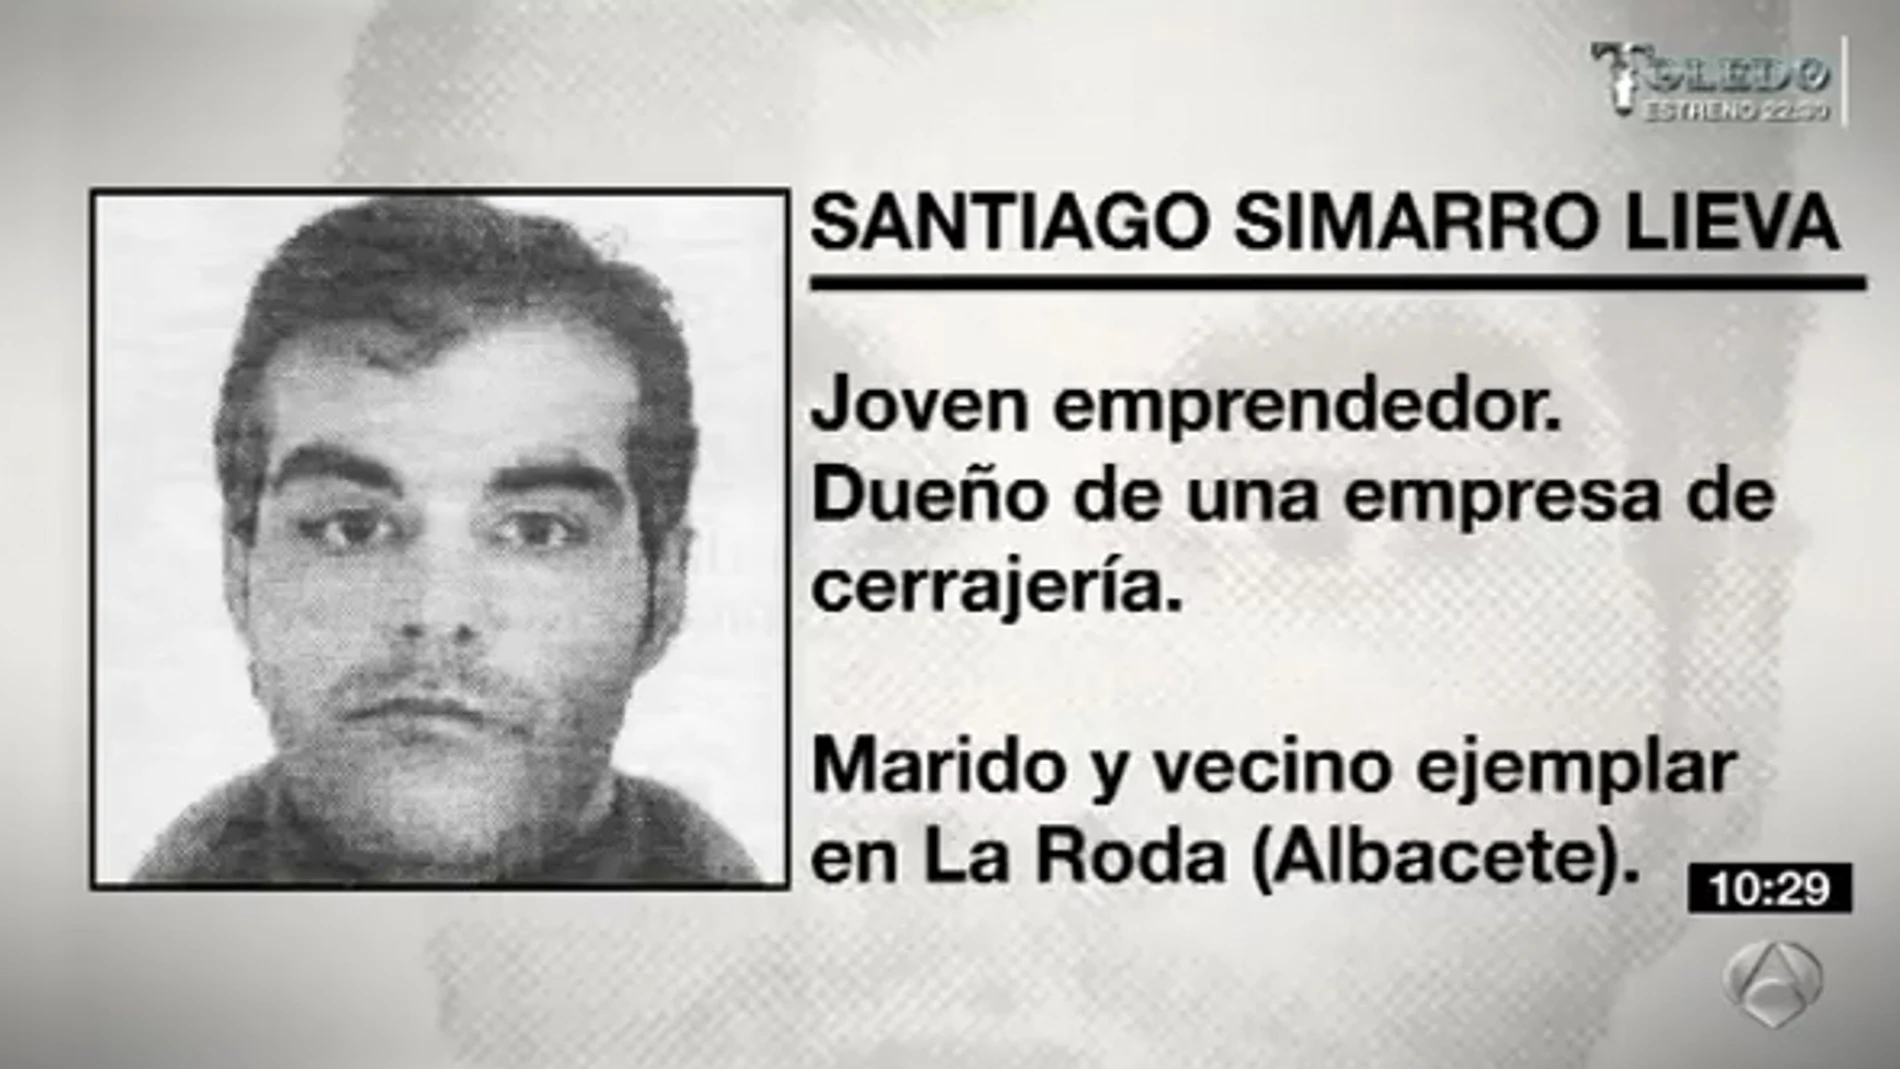 Santiago Simarro cometió varios delitos